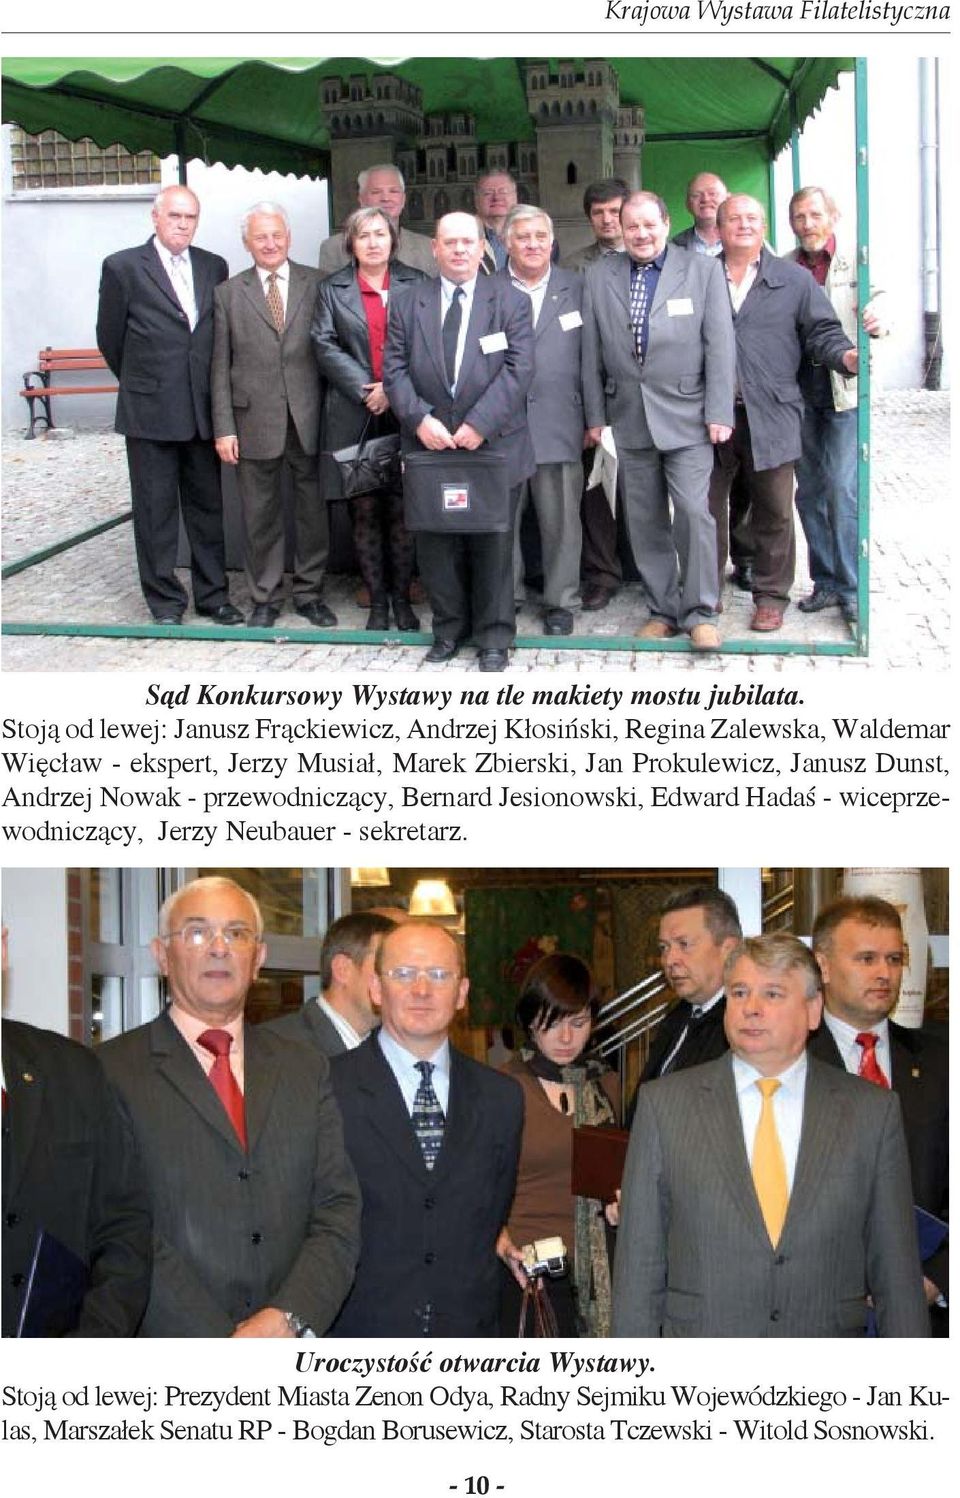 Prokulewicz, Janusz Dunst, Andrzej Nowak - przewodniczący, Bernard Jesionowski, Edward Hadaś - wiceprzewodniczący, Jerzy Neubauer -